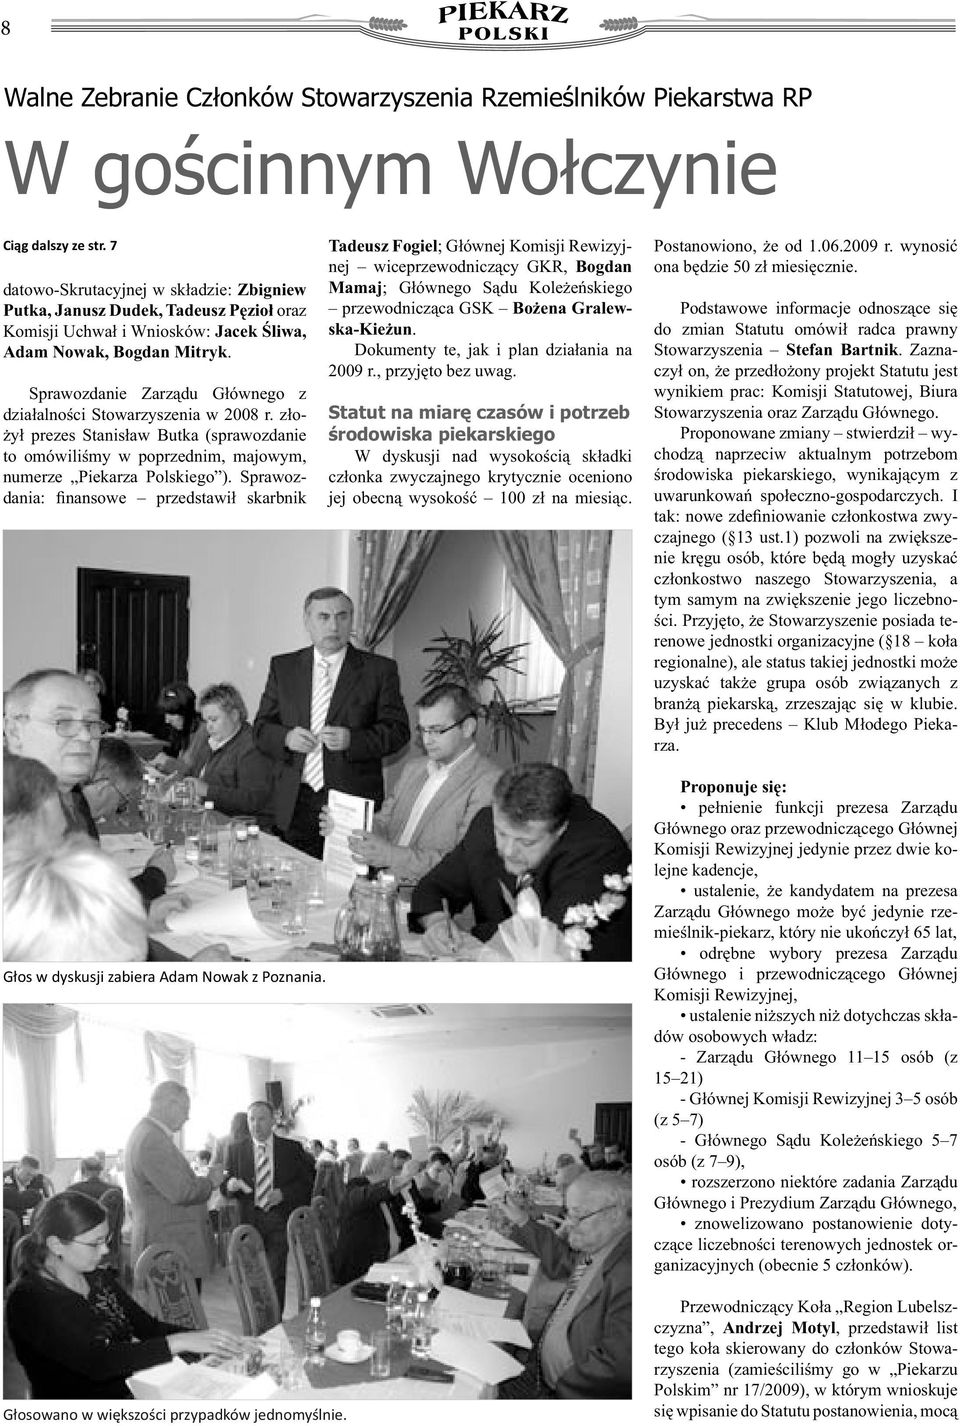 Sprawozdanie Zarządu Głównego z działalności Stowarzyszenia w 2008 r. złożył prezes Stanisław Butka (sprawozdanie to omówiliśmy w poprzednim, majowym, numerze Piekarza Polskiego ).